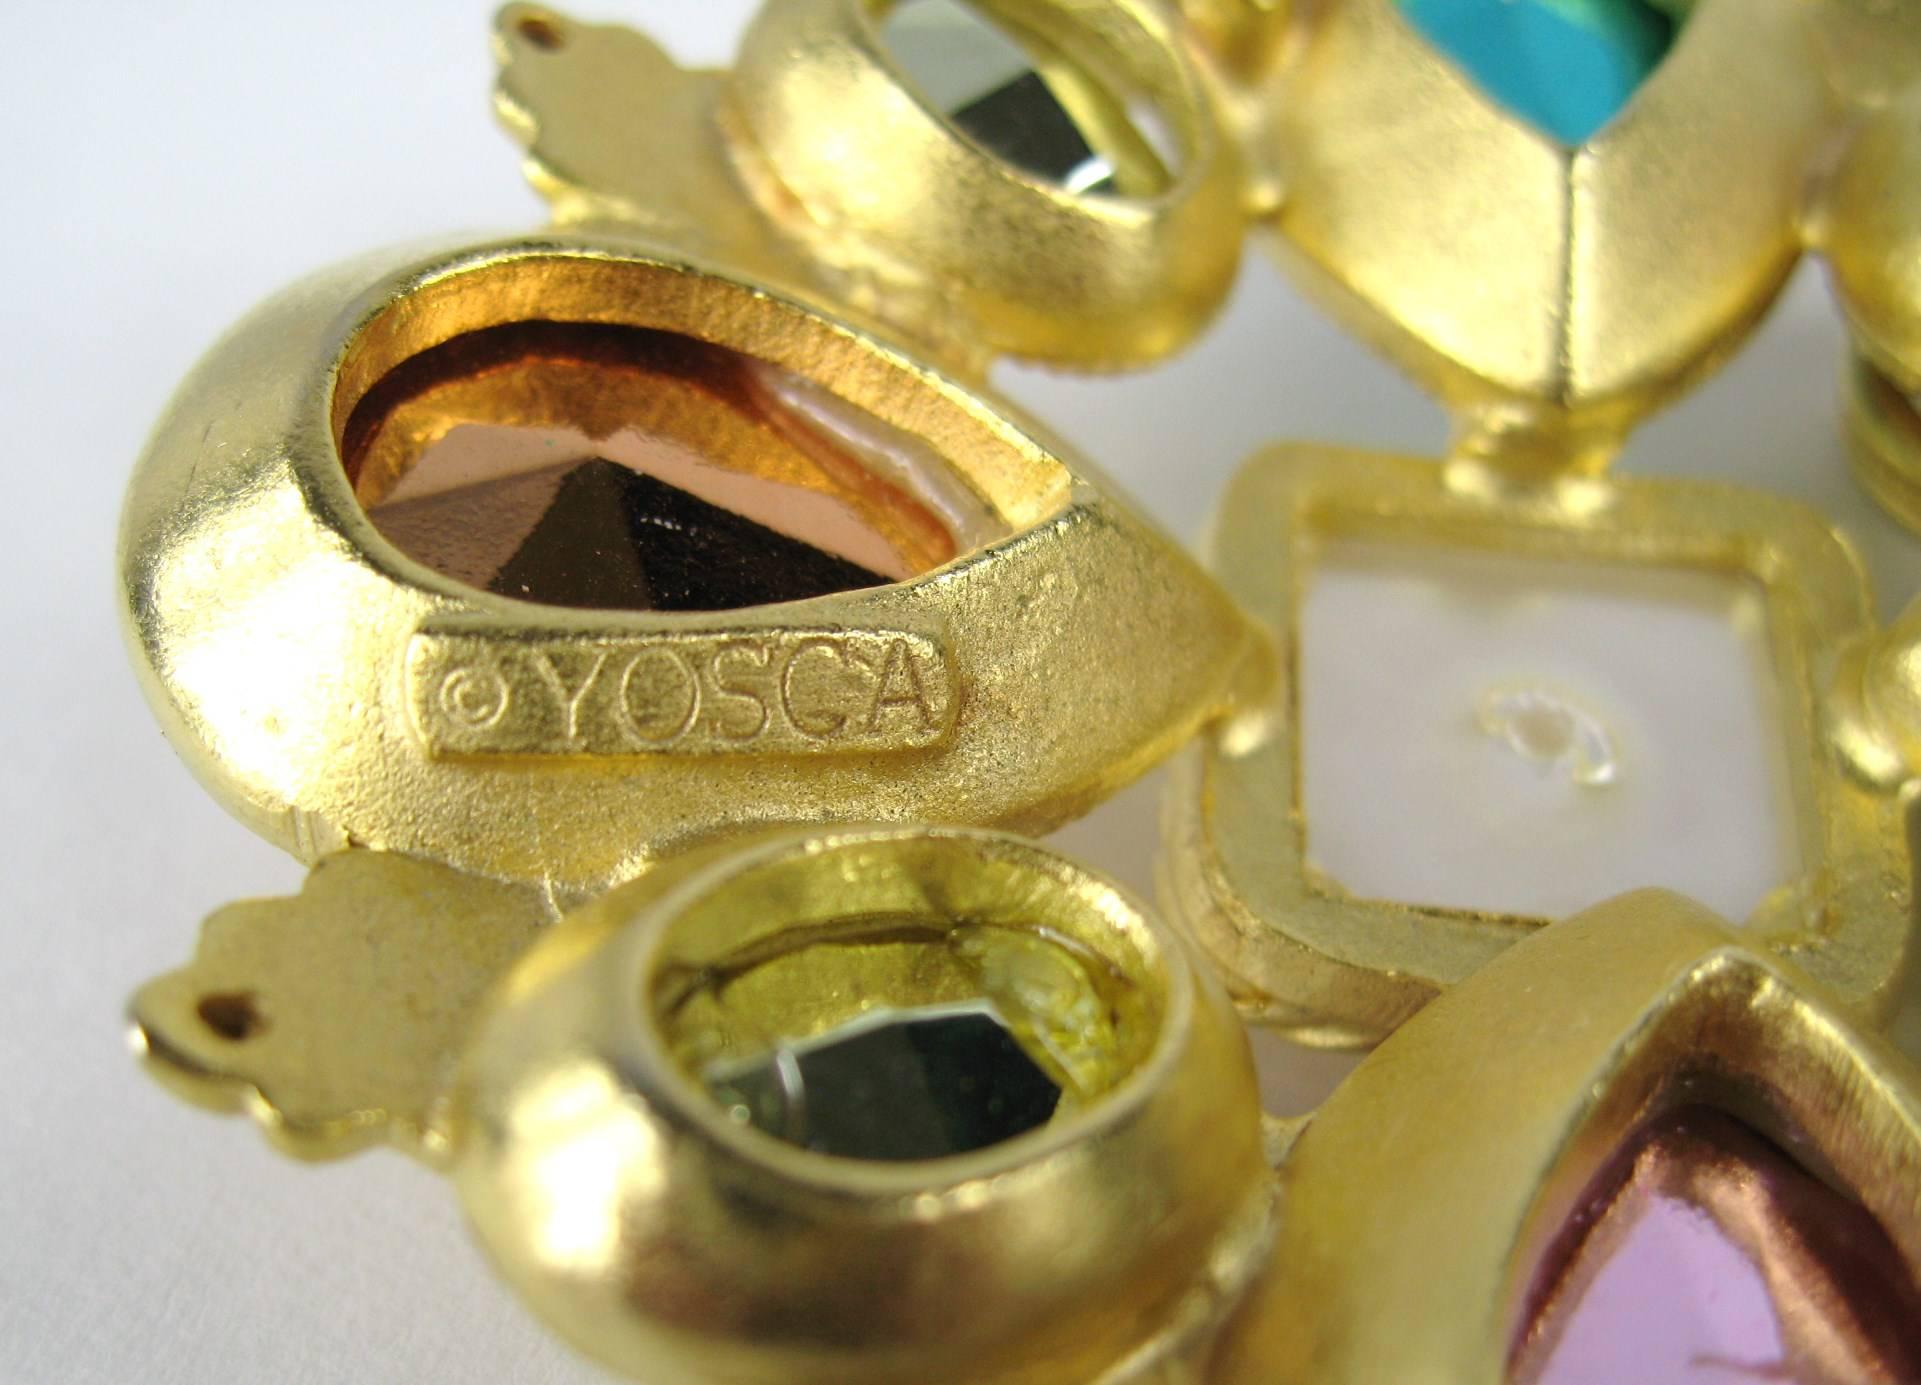  Yosca Vergoldetes Gold Großes mehrfarbiges Malteserkreuz - Nie getragen 1980er Jahre im Angebot 1